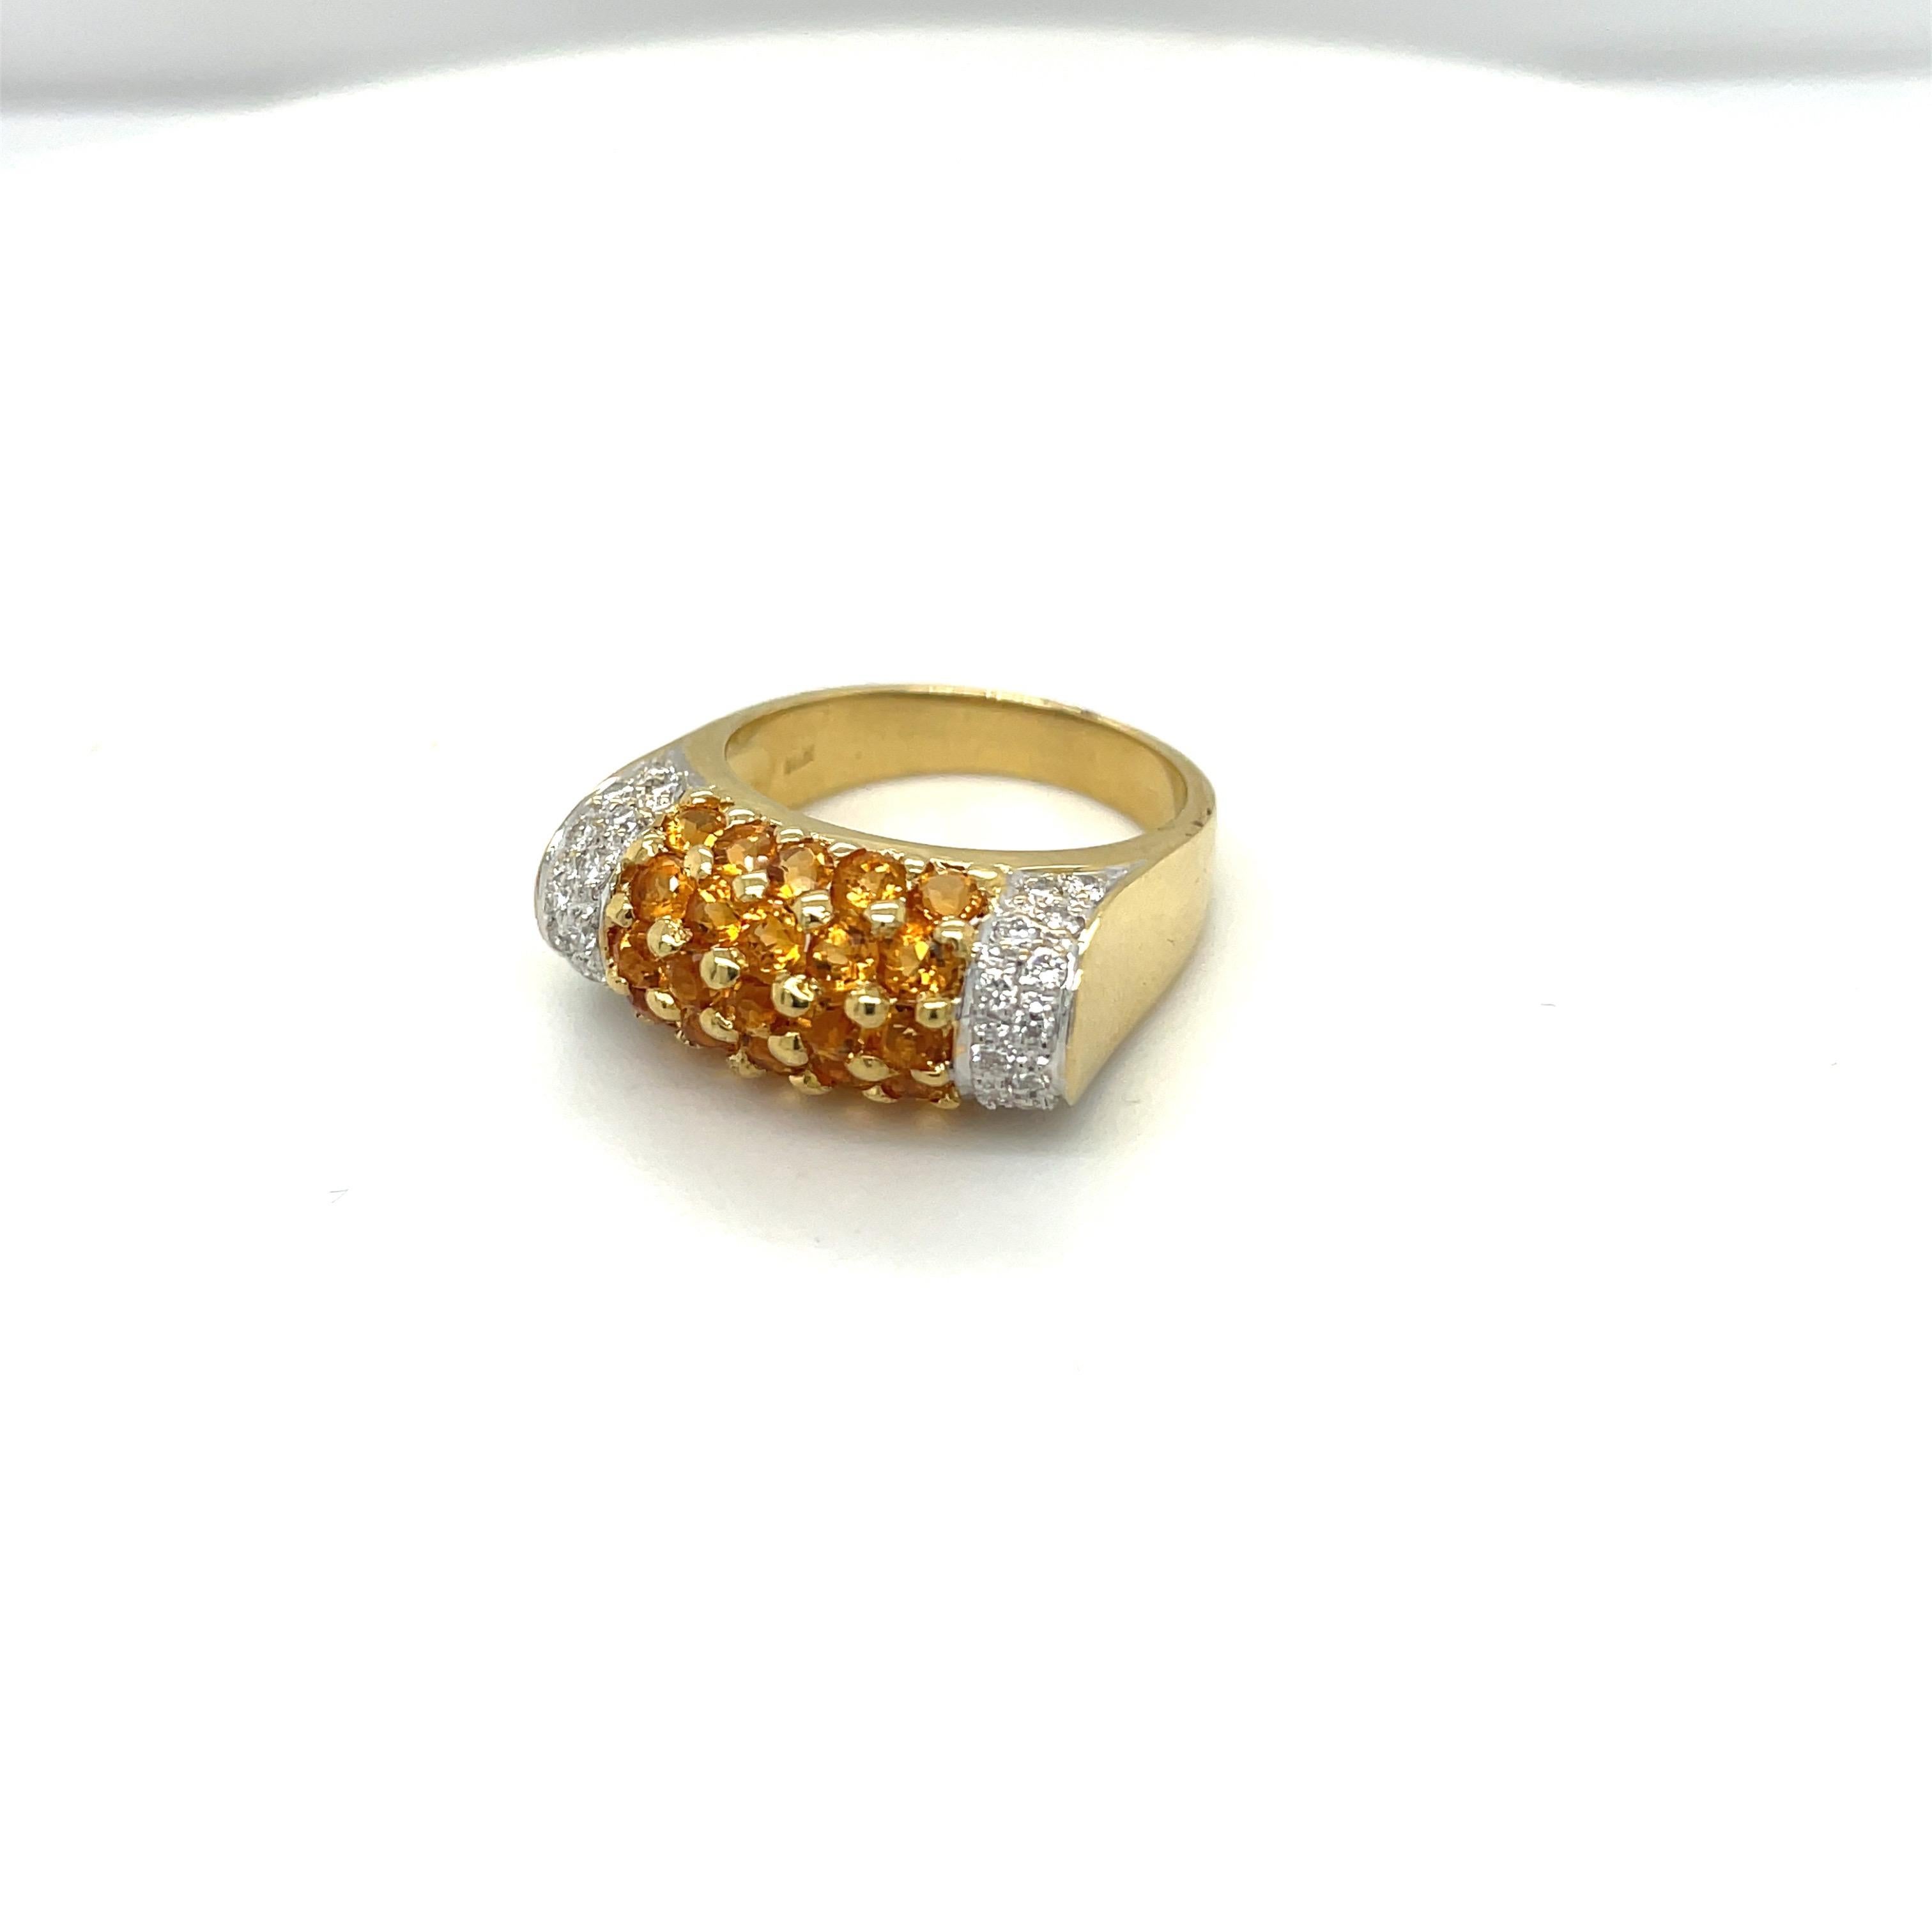 Ein sehr leicht zu tragender Ring aus 18 Karat Gelbgold. Der Ring ist mit 25 runden Zitrinen von 1,50 Karat und 30 runden Brillanten von 0,43 Karat besetzt.
Fingergröße 7
Gestempelt 750 18K
Cellini Juweliere NYC